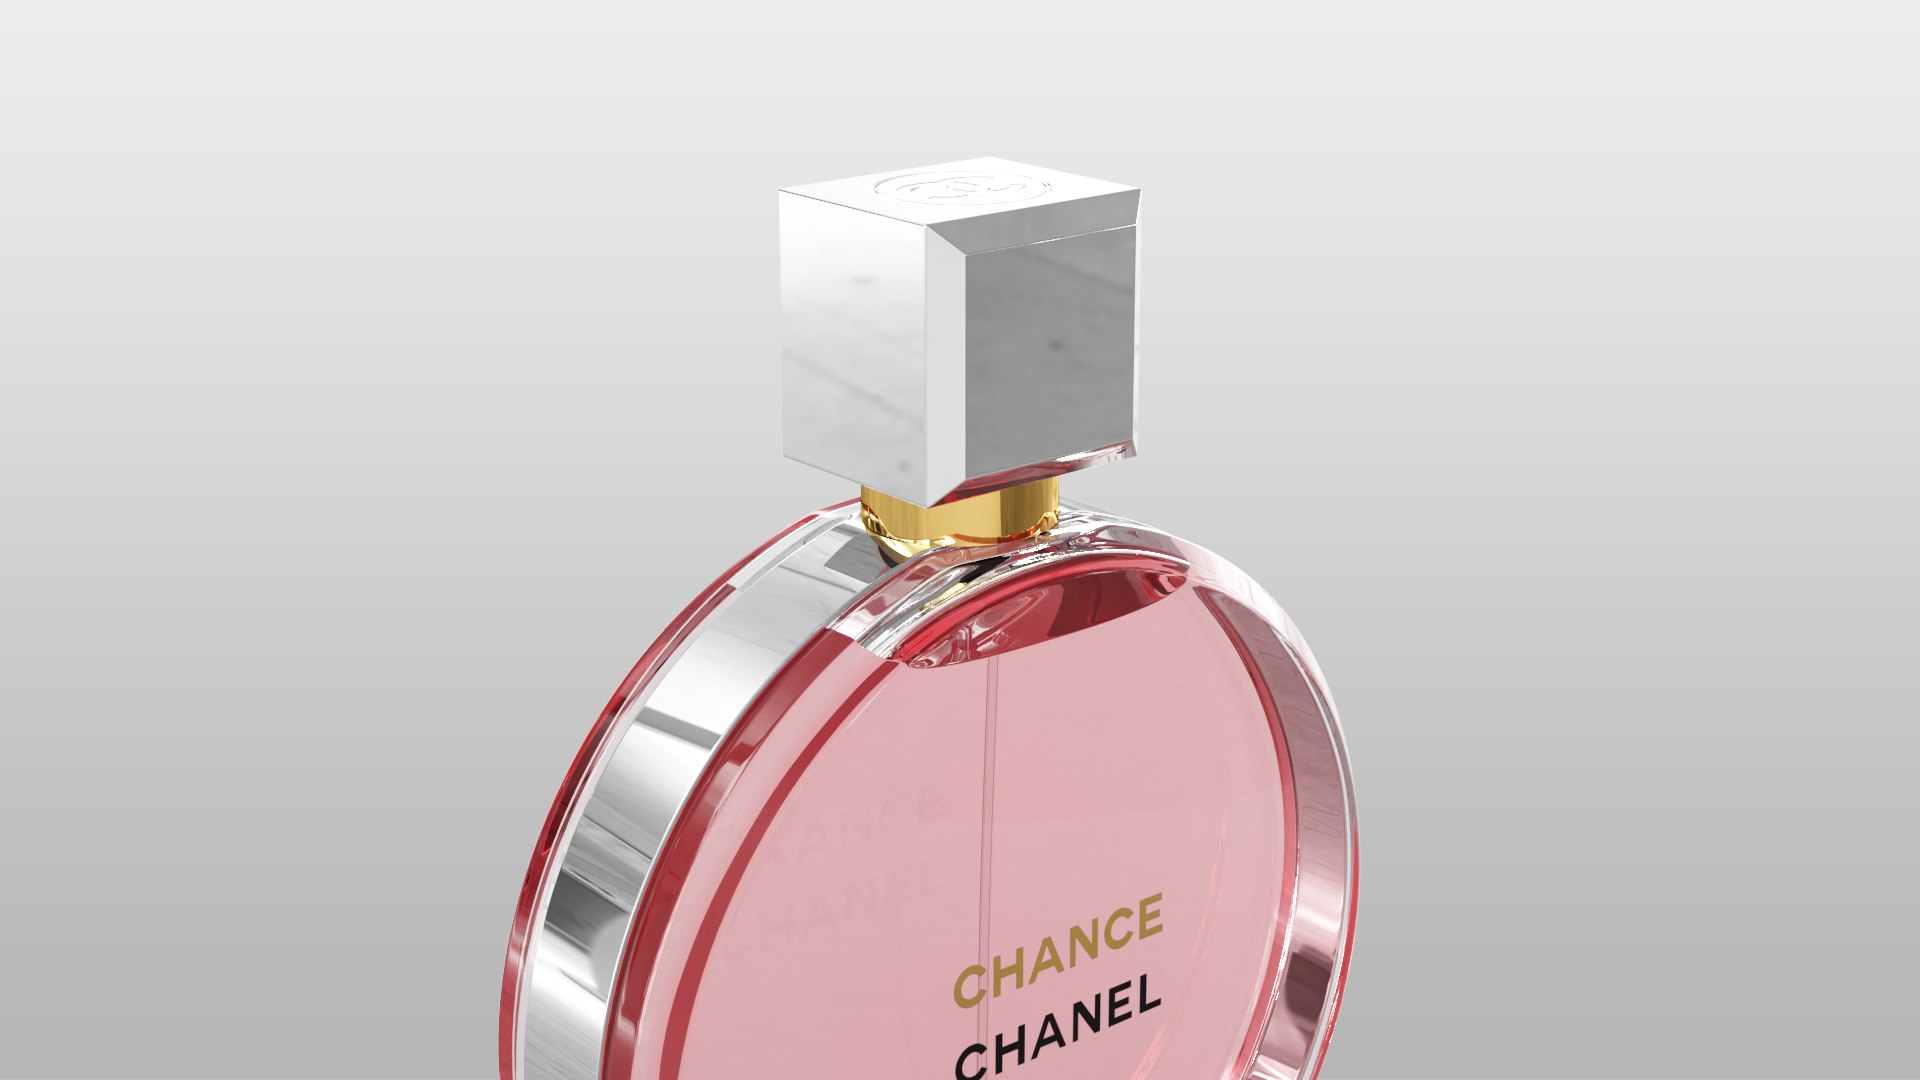 Chanel chance eau tendre 3D model - TurboSquid 1485573